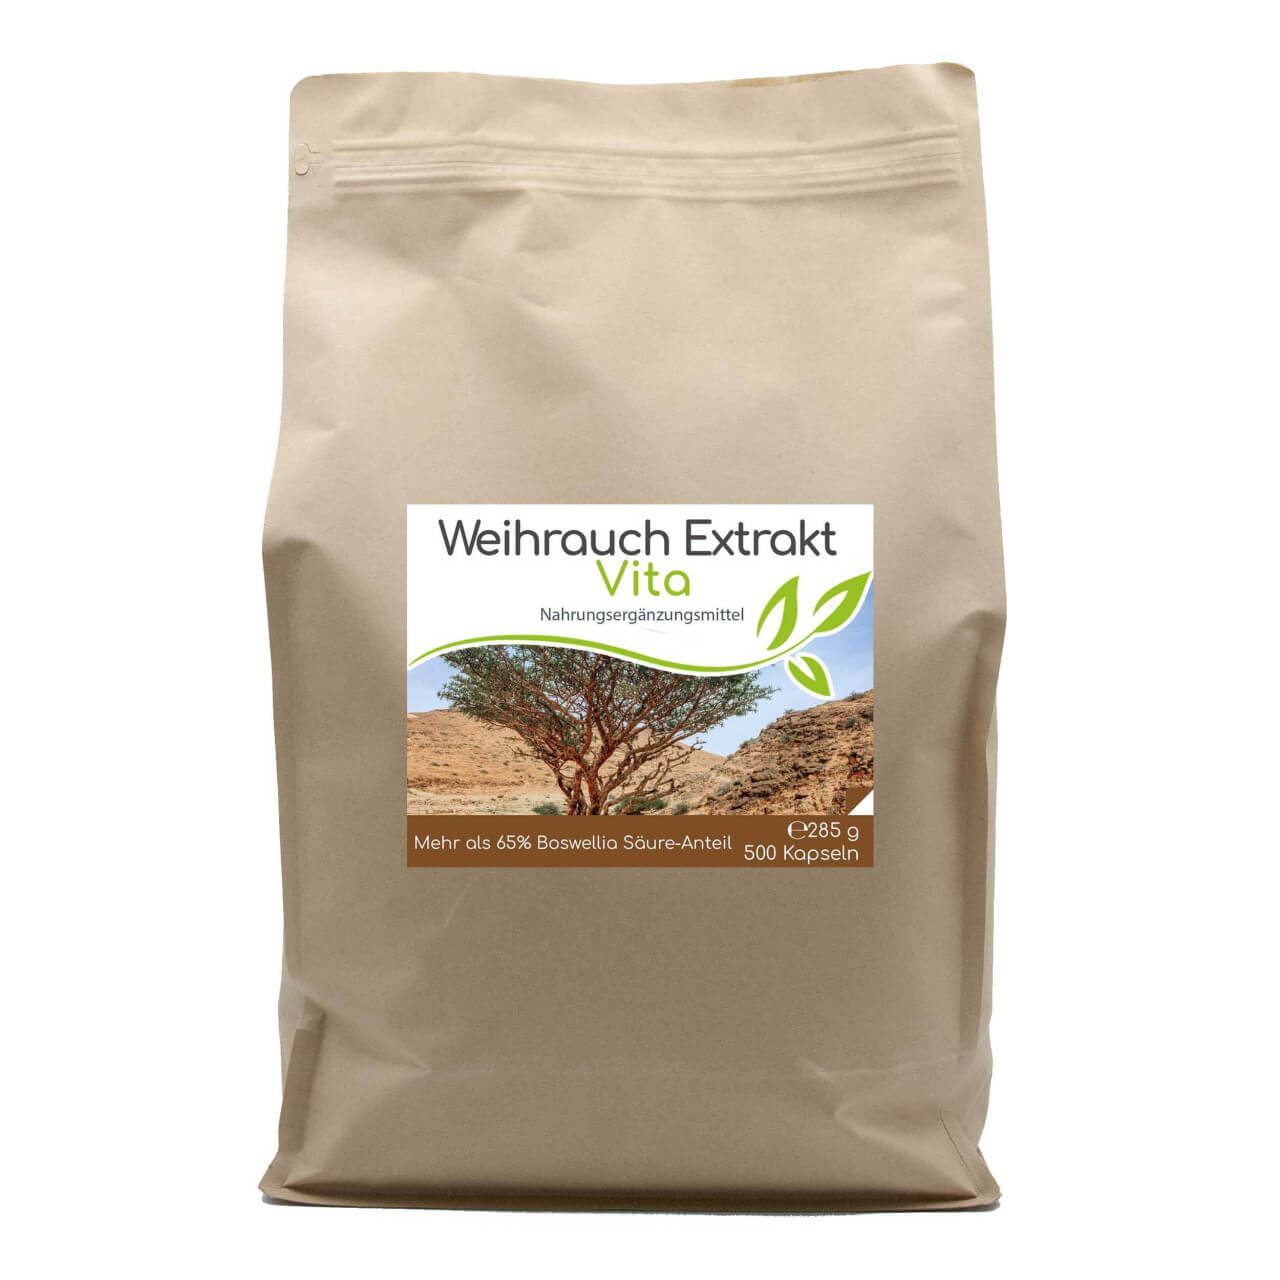 Weihrauch-Extrakt Vita | 500 Kapseln im Vorratsbeutel (>65% Boswellia-Säuren-Anteil)